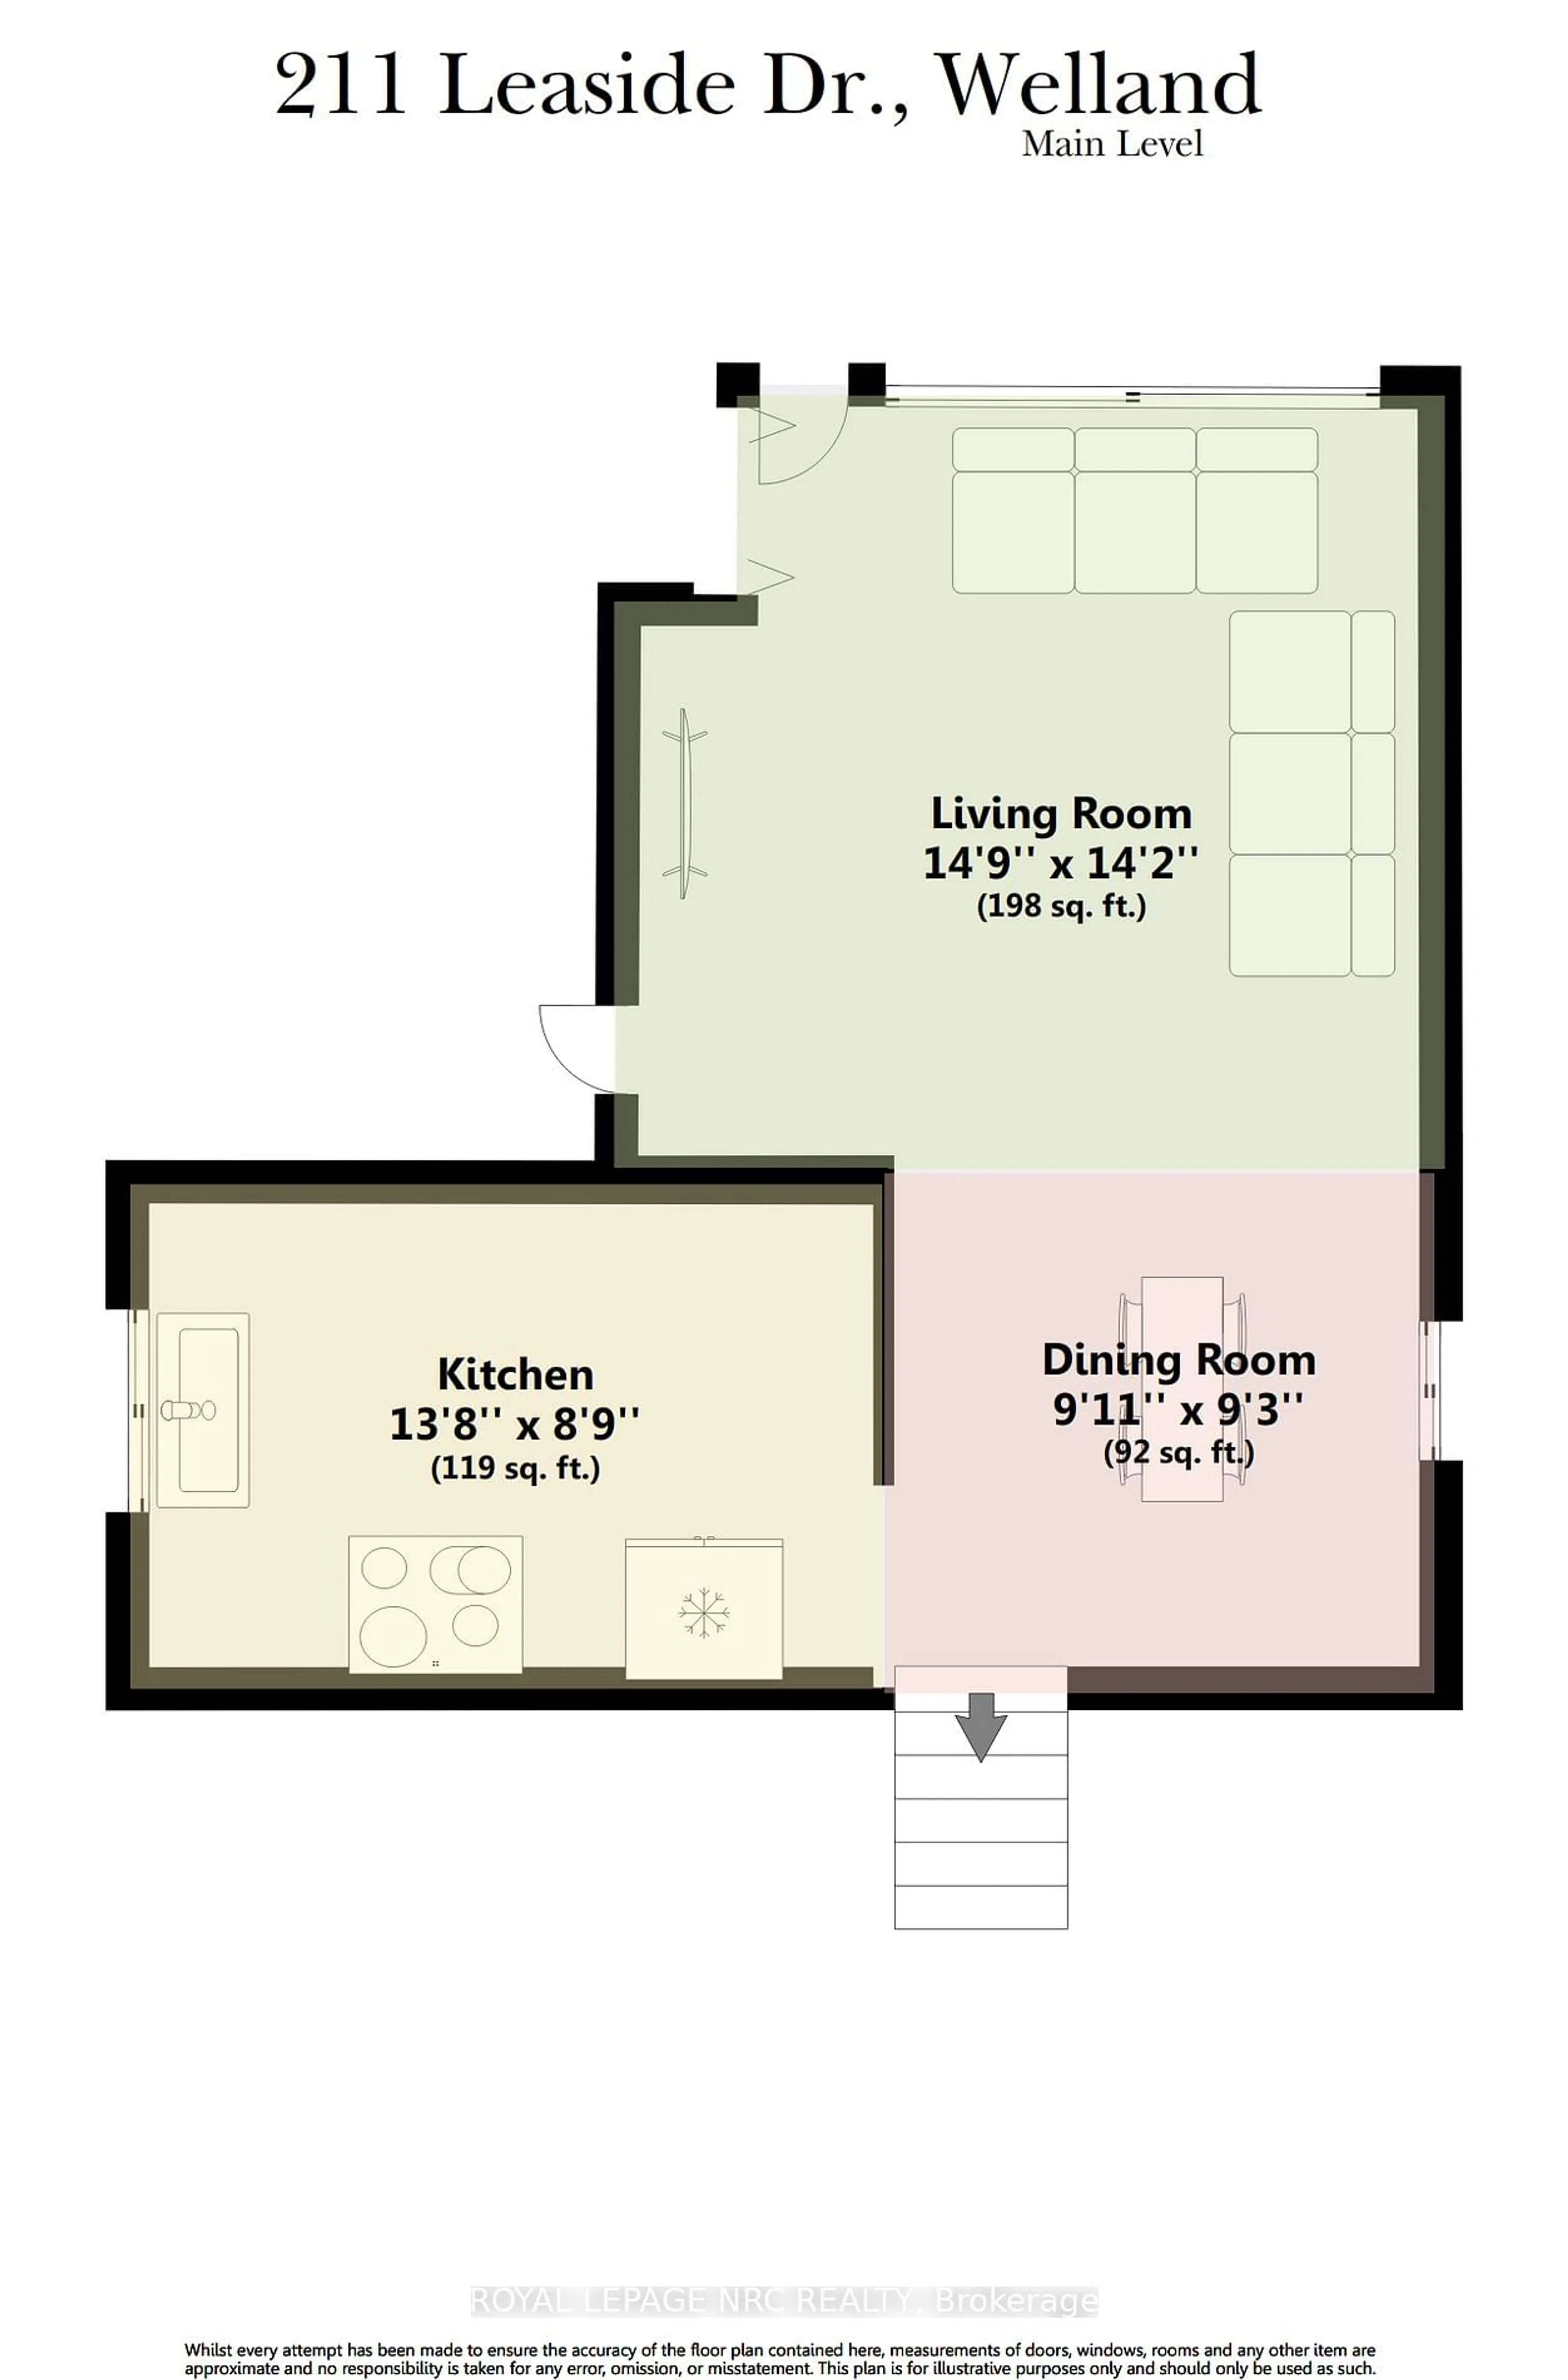 Floor plan for 211 Leaside Dr, Welland Ontario L3C 6N4